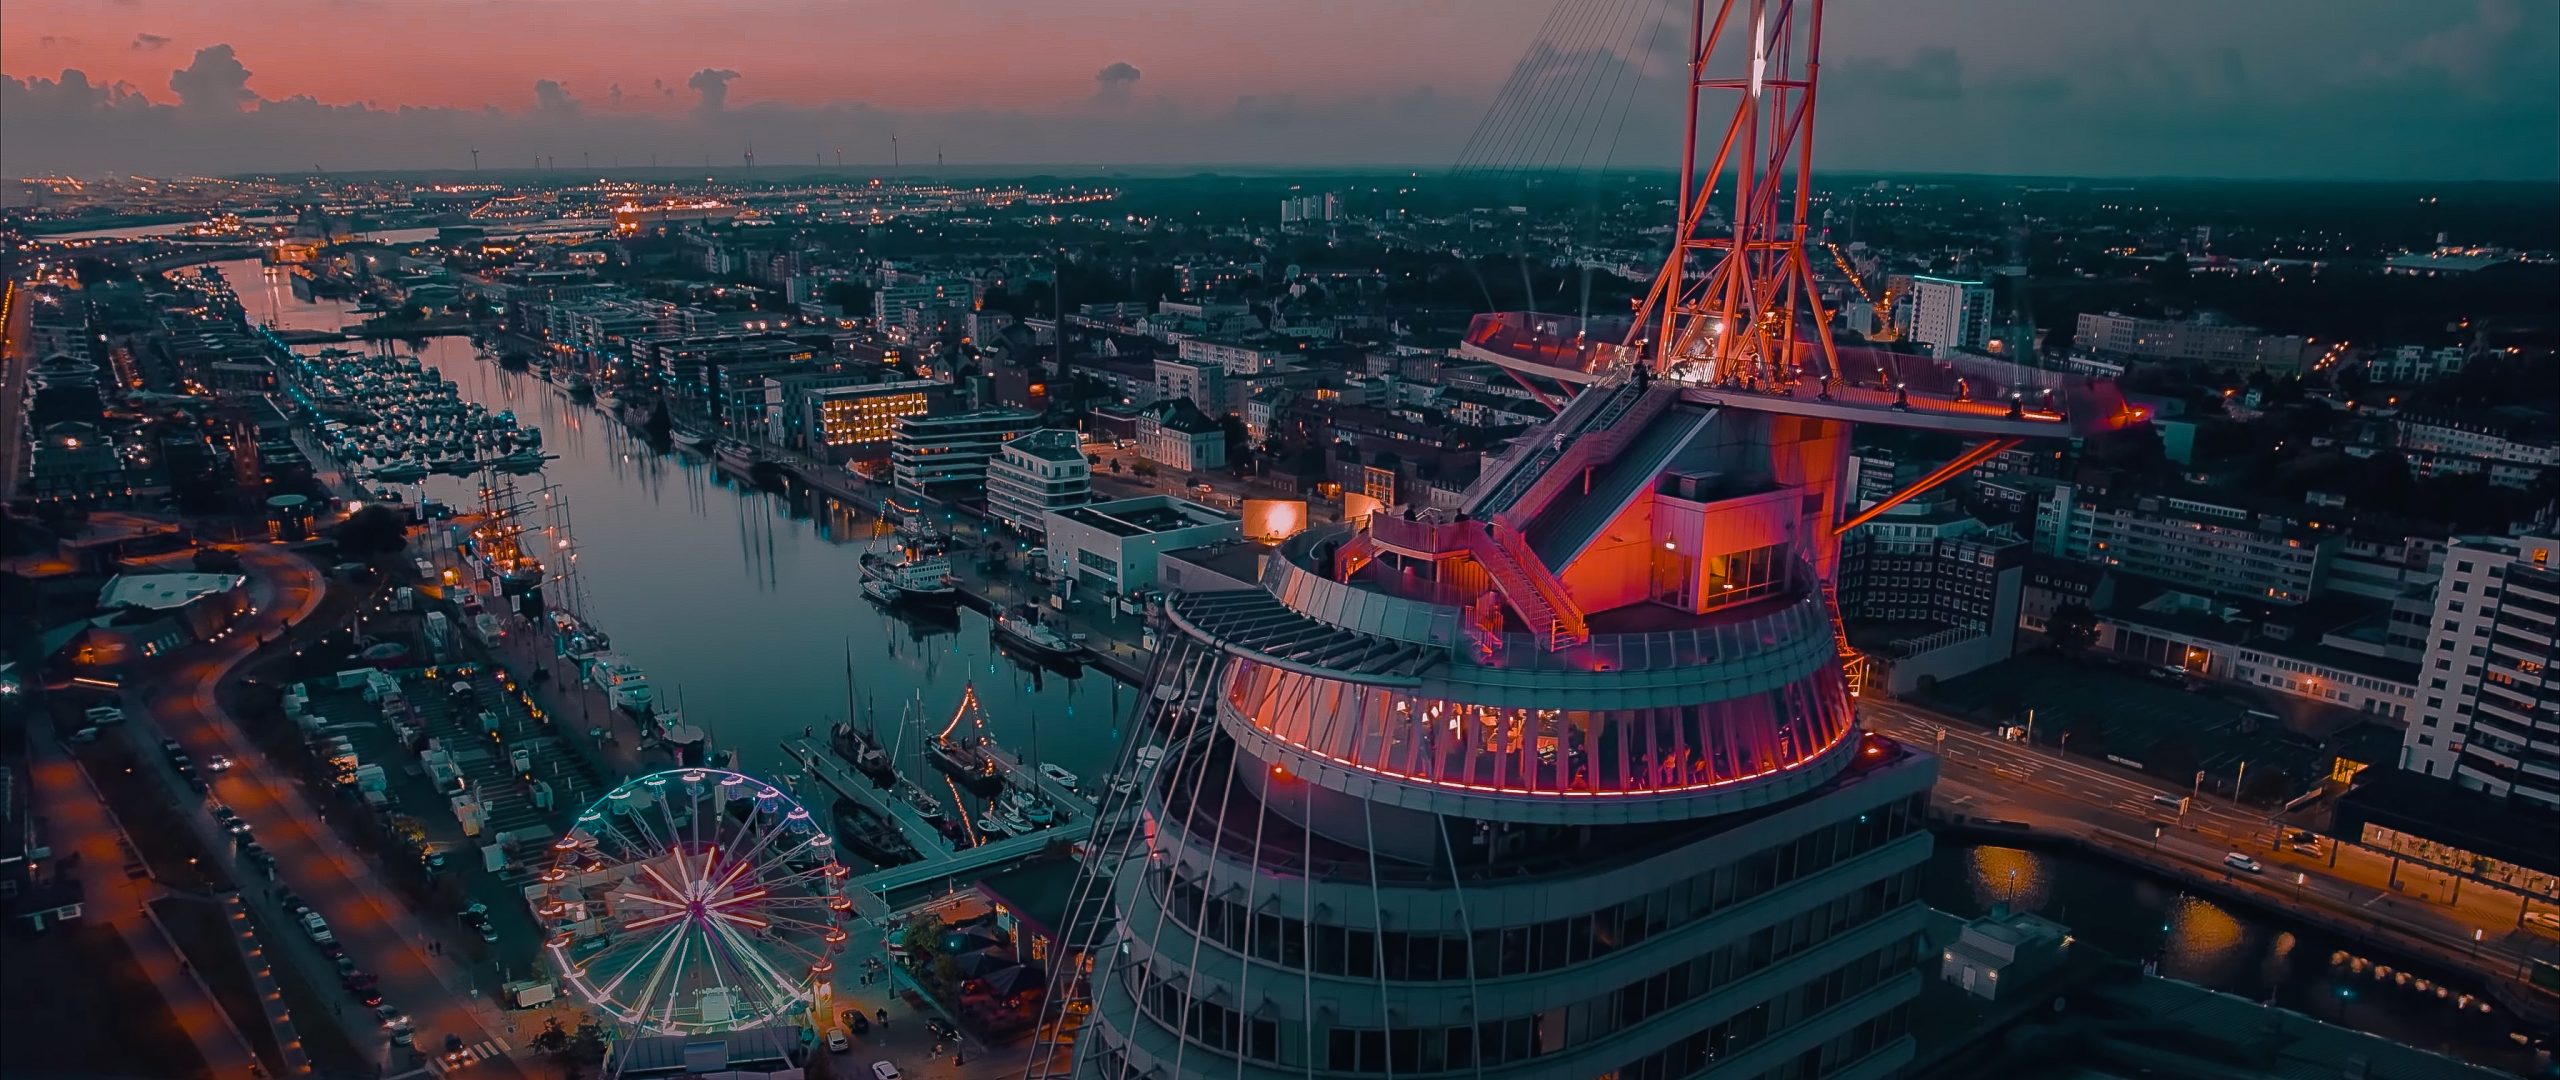 Online-Konzertvideo von der Aussichtsplattform des ATLANTIC Hotel Sail City in Bremerhaven